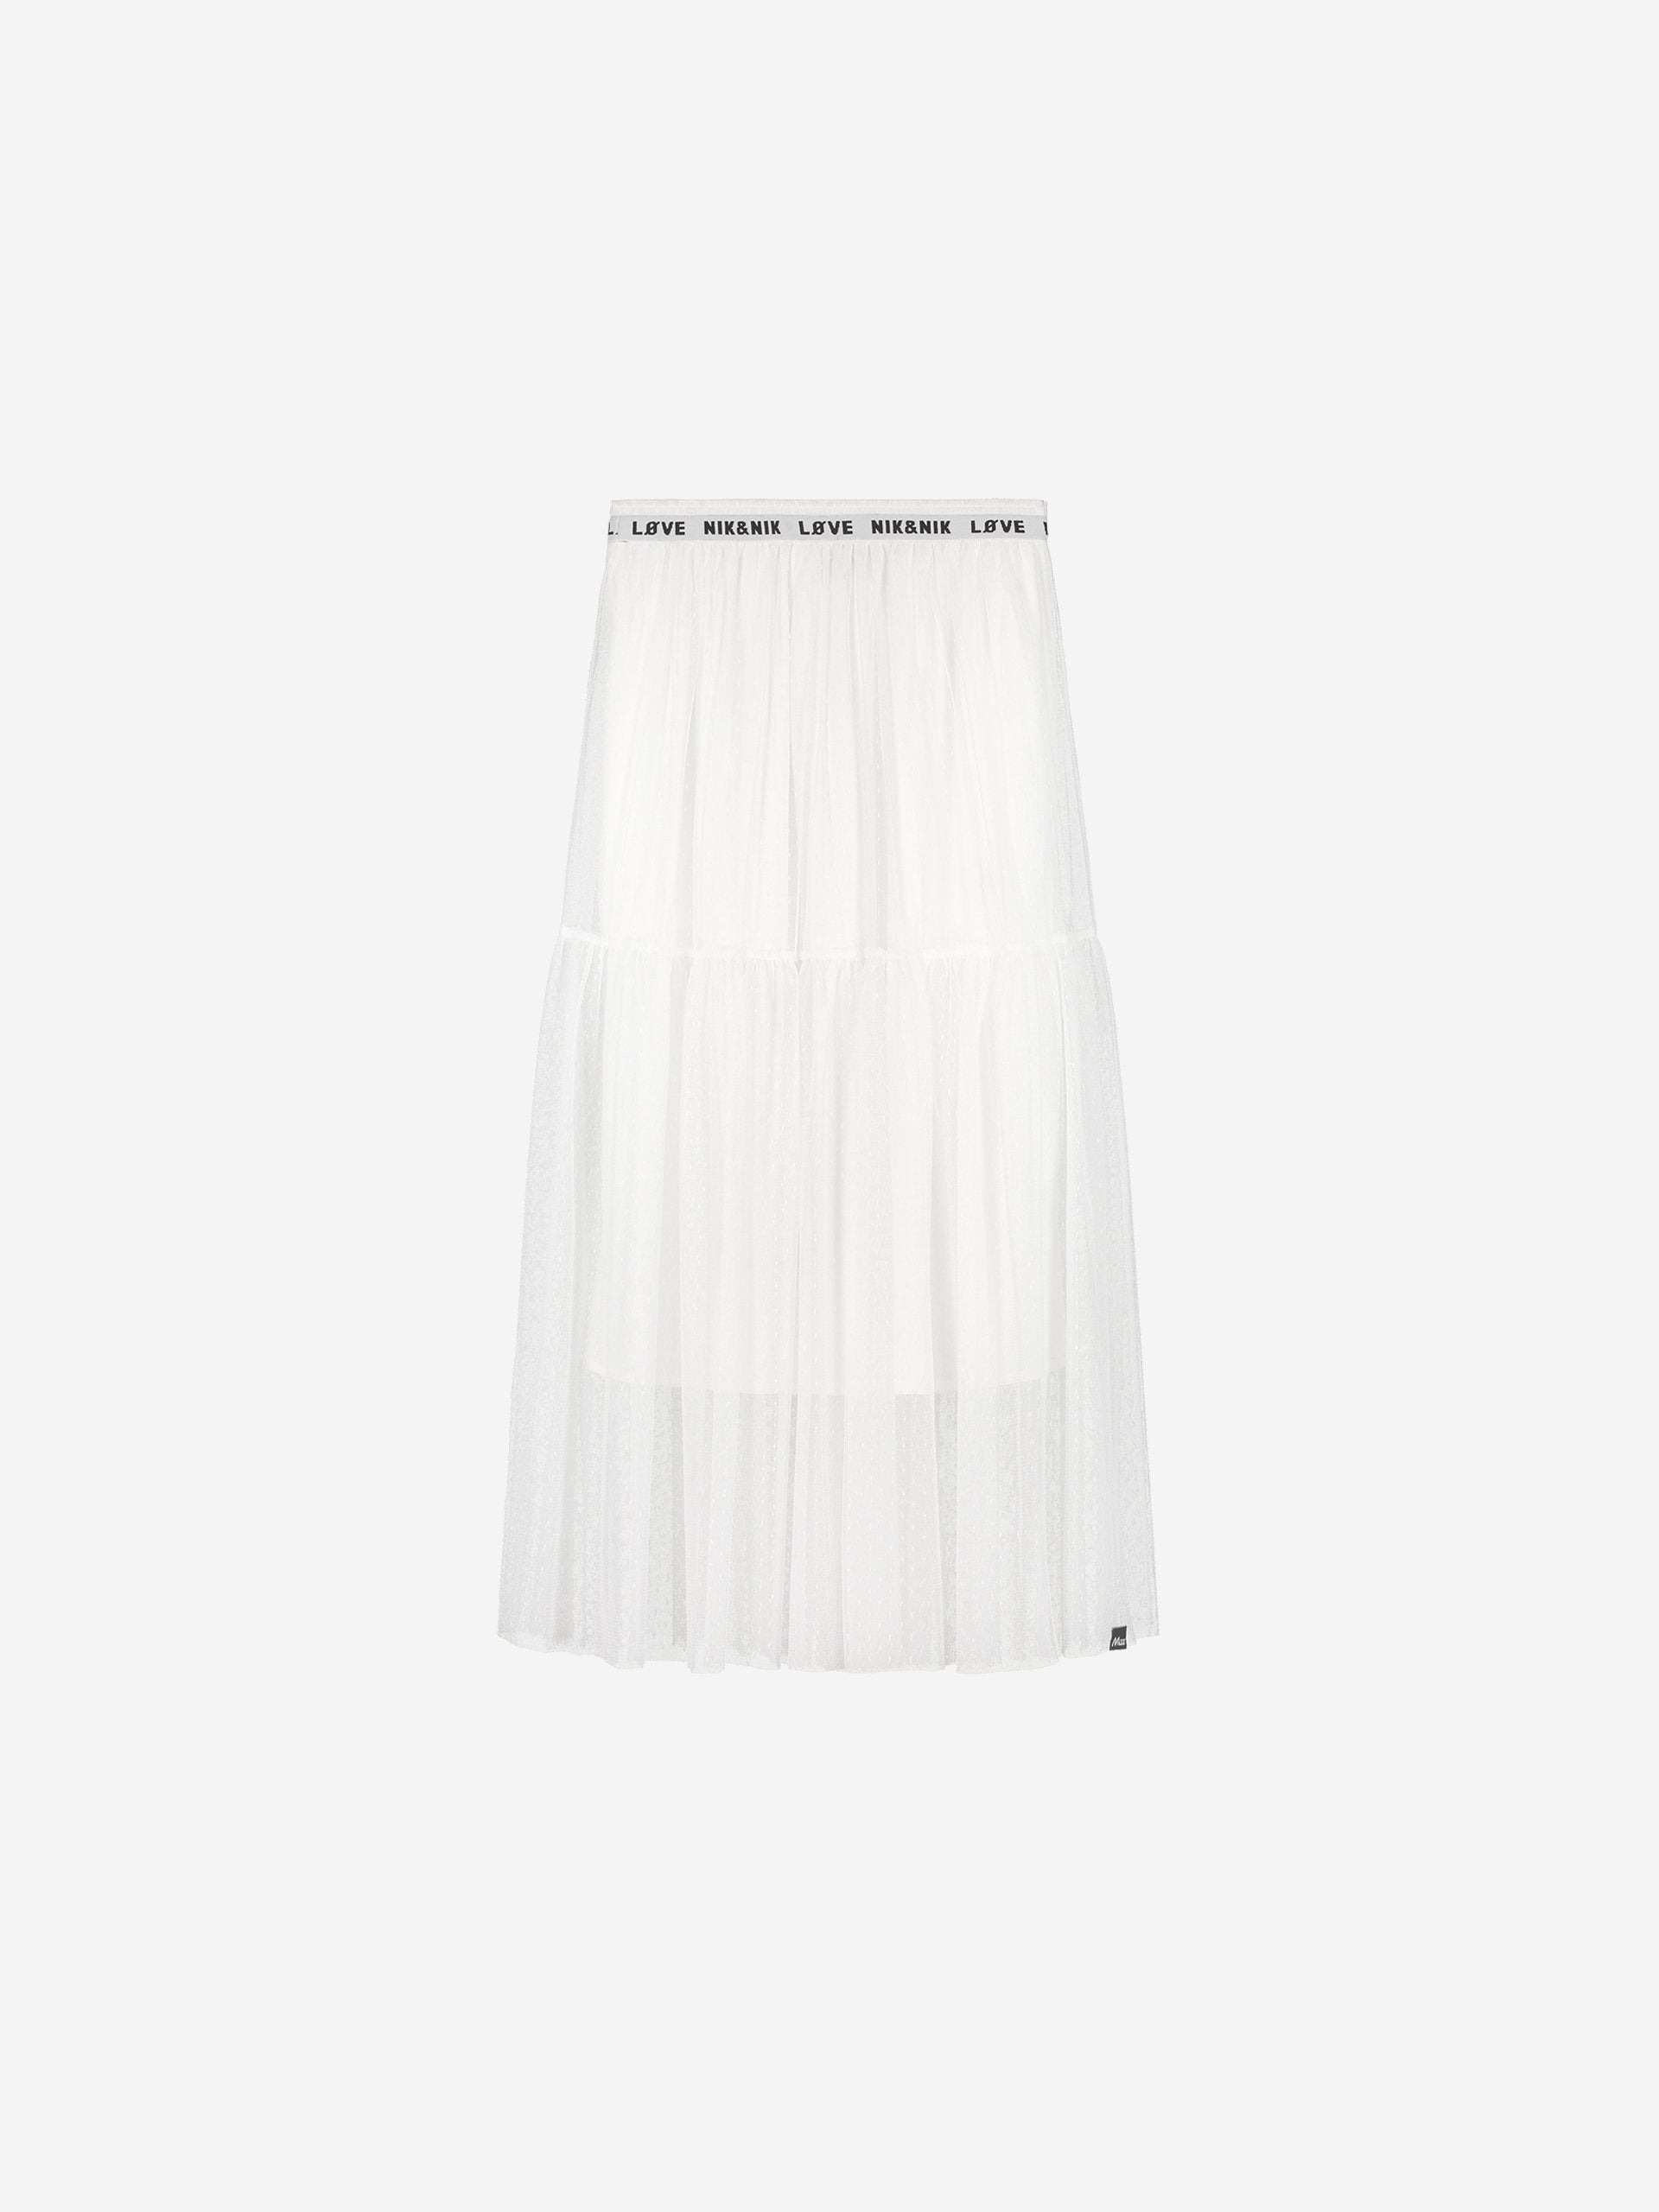 Meisjes Corinna Skirt van Nik & Nik in de kleur Off White in maat 176.